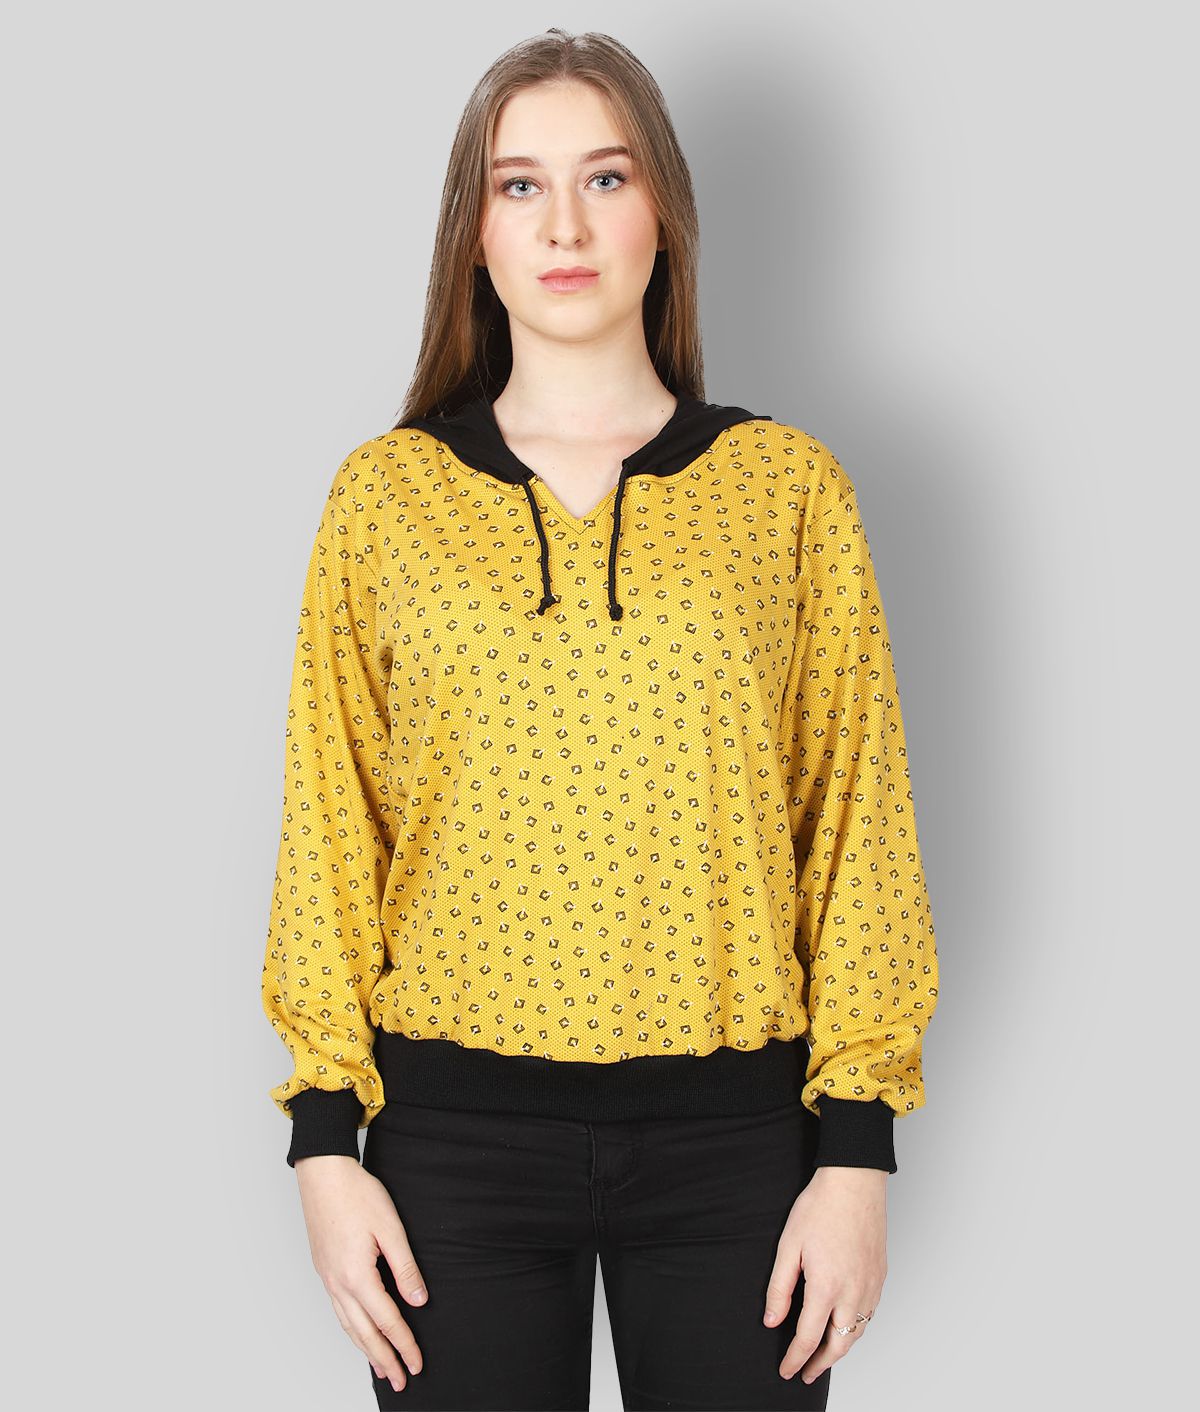 Affair - Yellow Cotton Regular Fit Women's T-Shirt ( Pack of 1 )